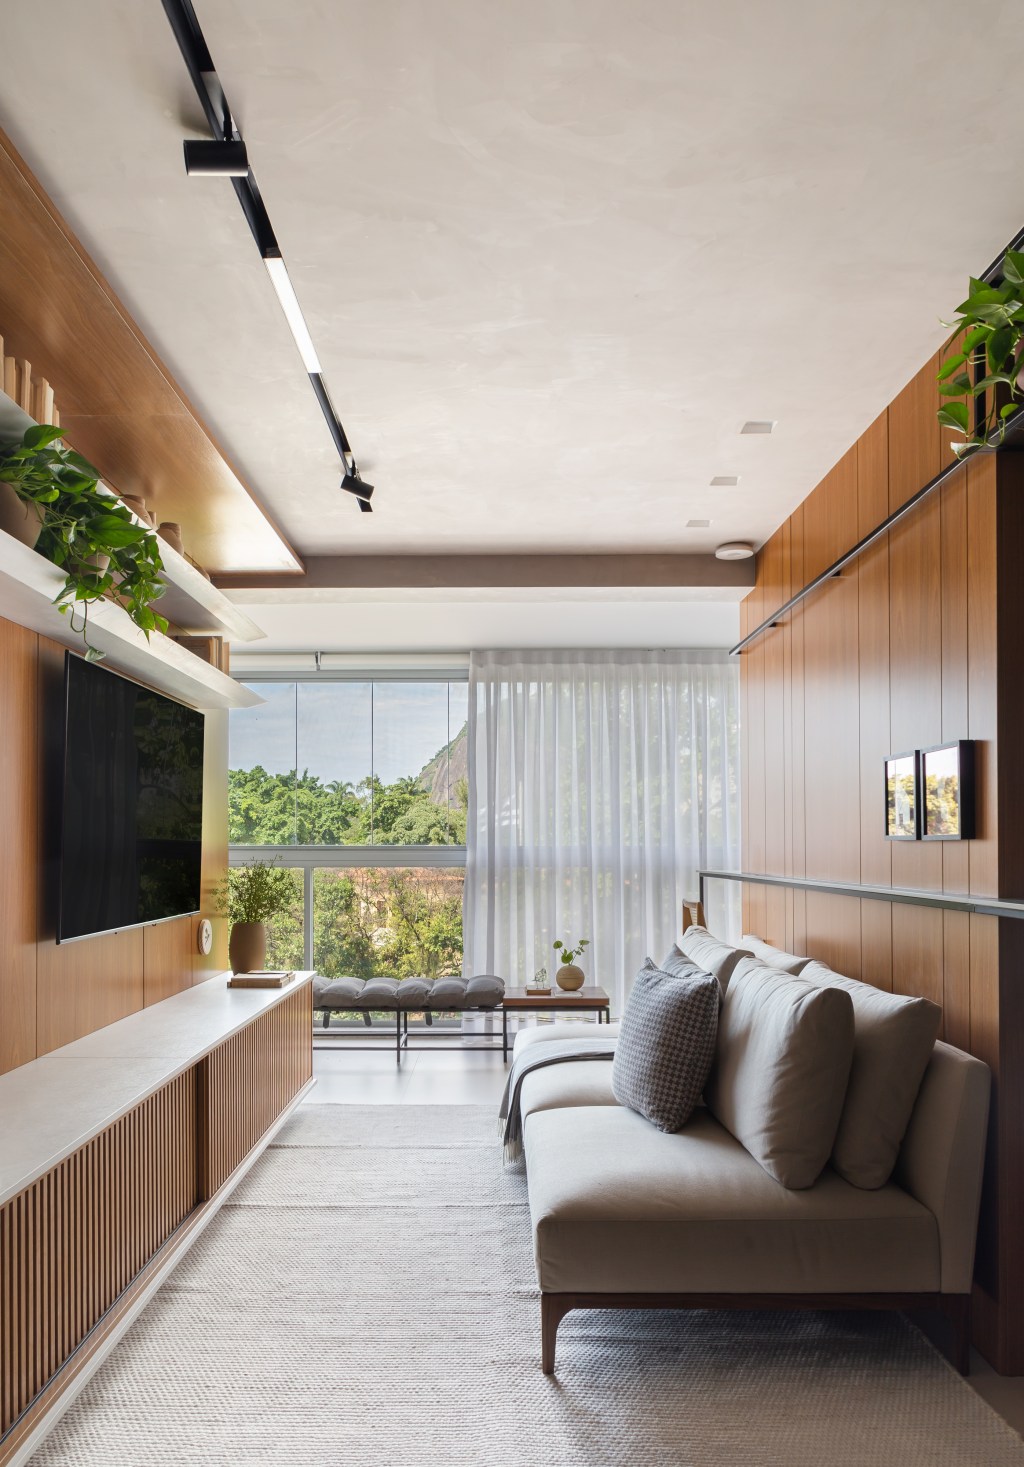 Apê de 100 m2 prático décor contemporâneo toques industriais arquiteto Rafael Ramos sala estar varanda banco aparador tv sofa madeira